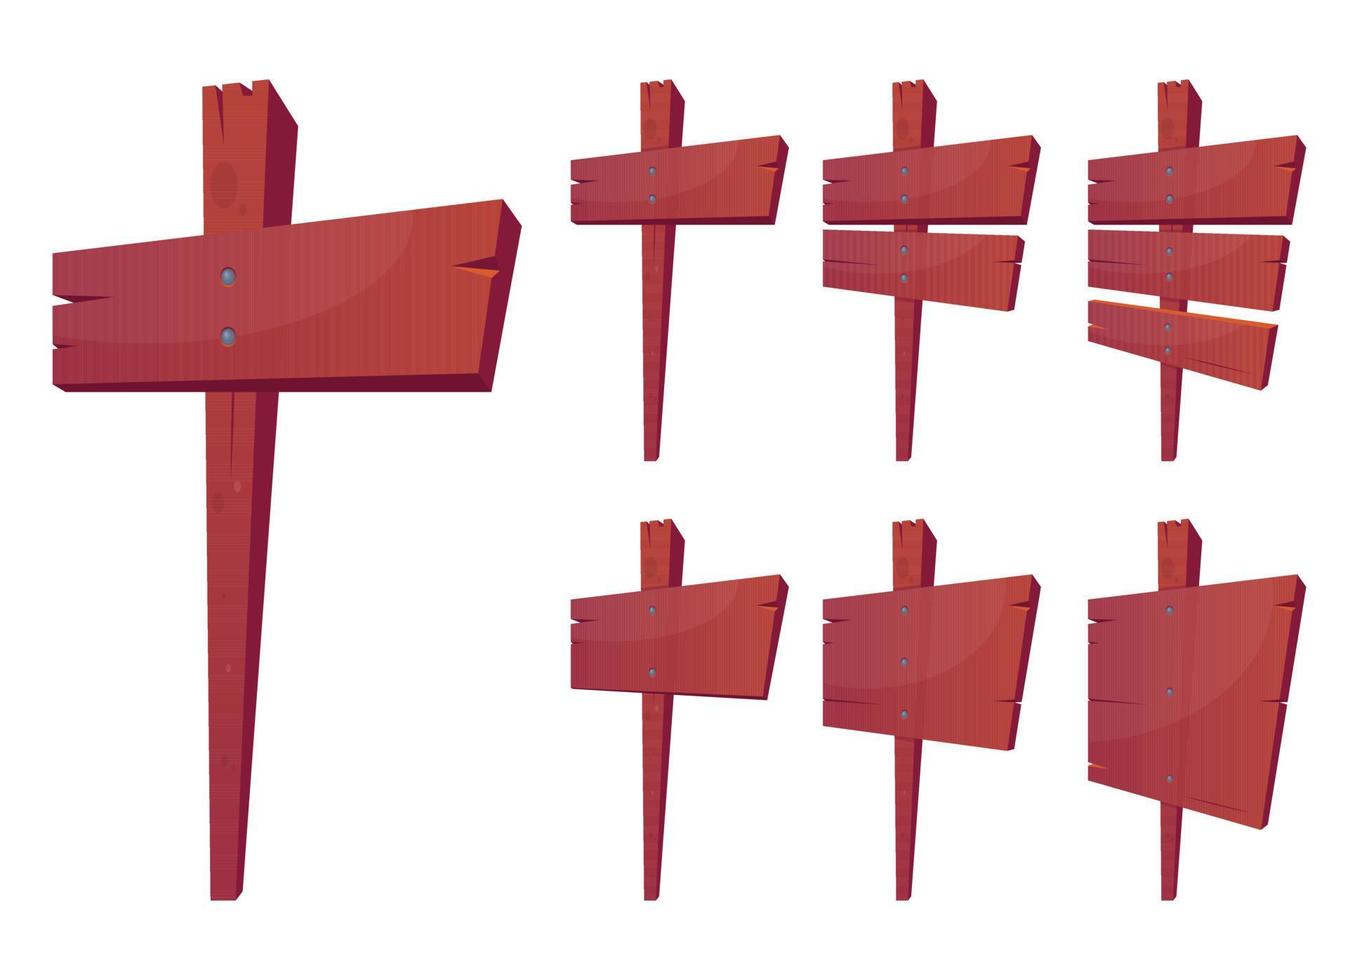 panneaux de signalisation en bois en illustration vectorielle de style dessin animé 2 vecteur